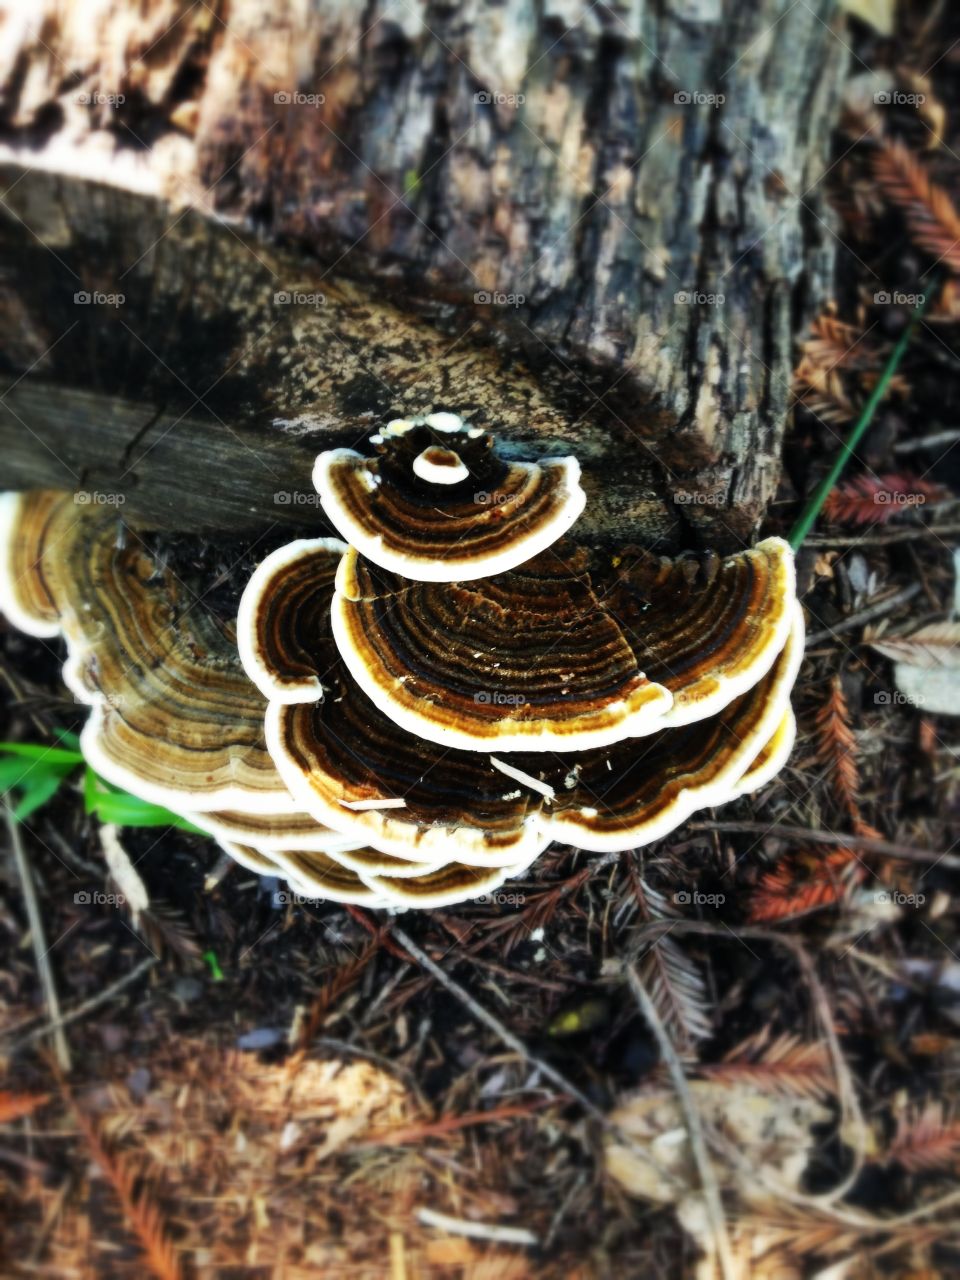 Turkey Tail. Turkey tail mushrooms 